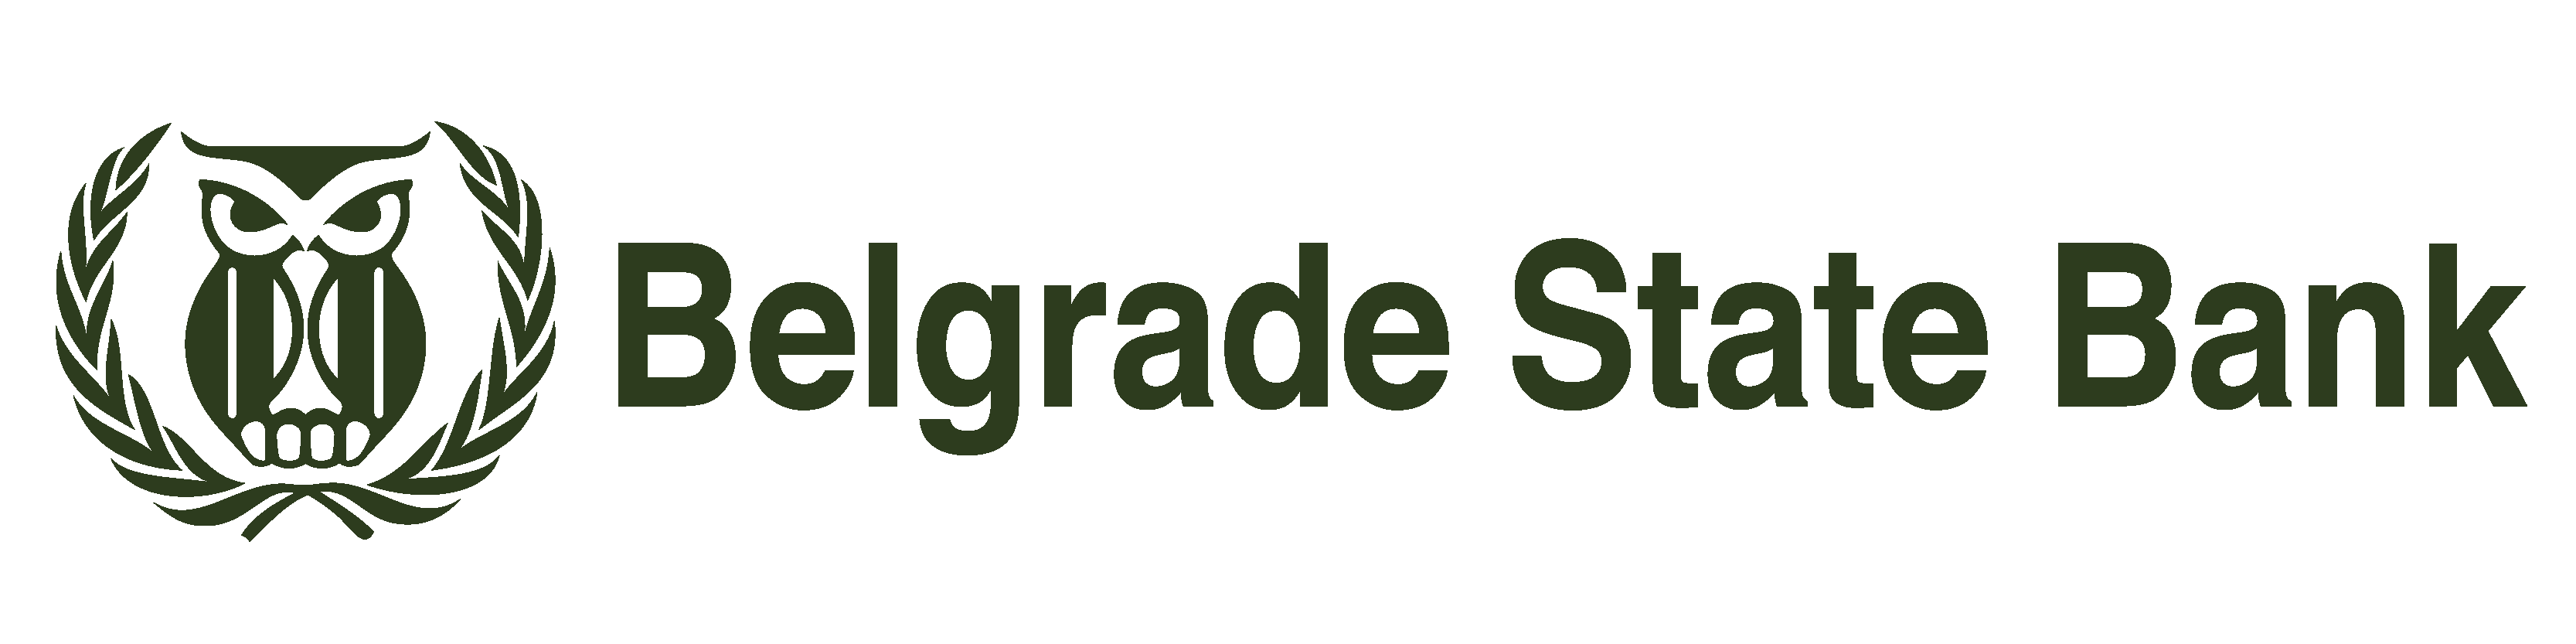 belgrade state bank logo